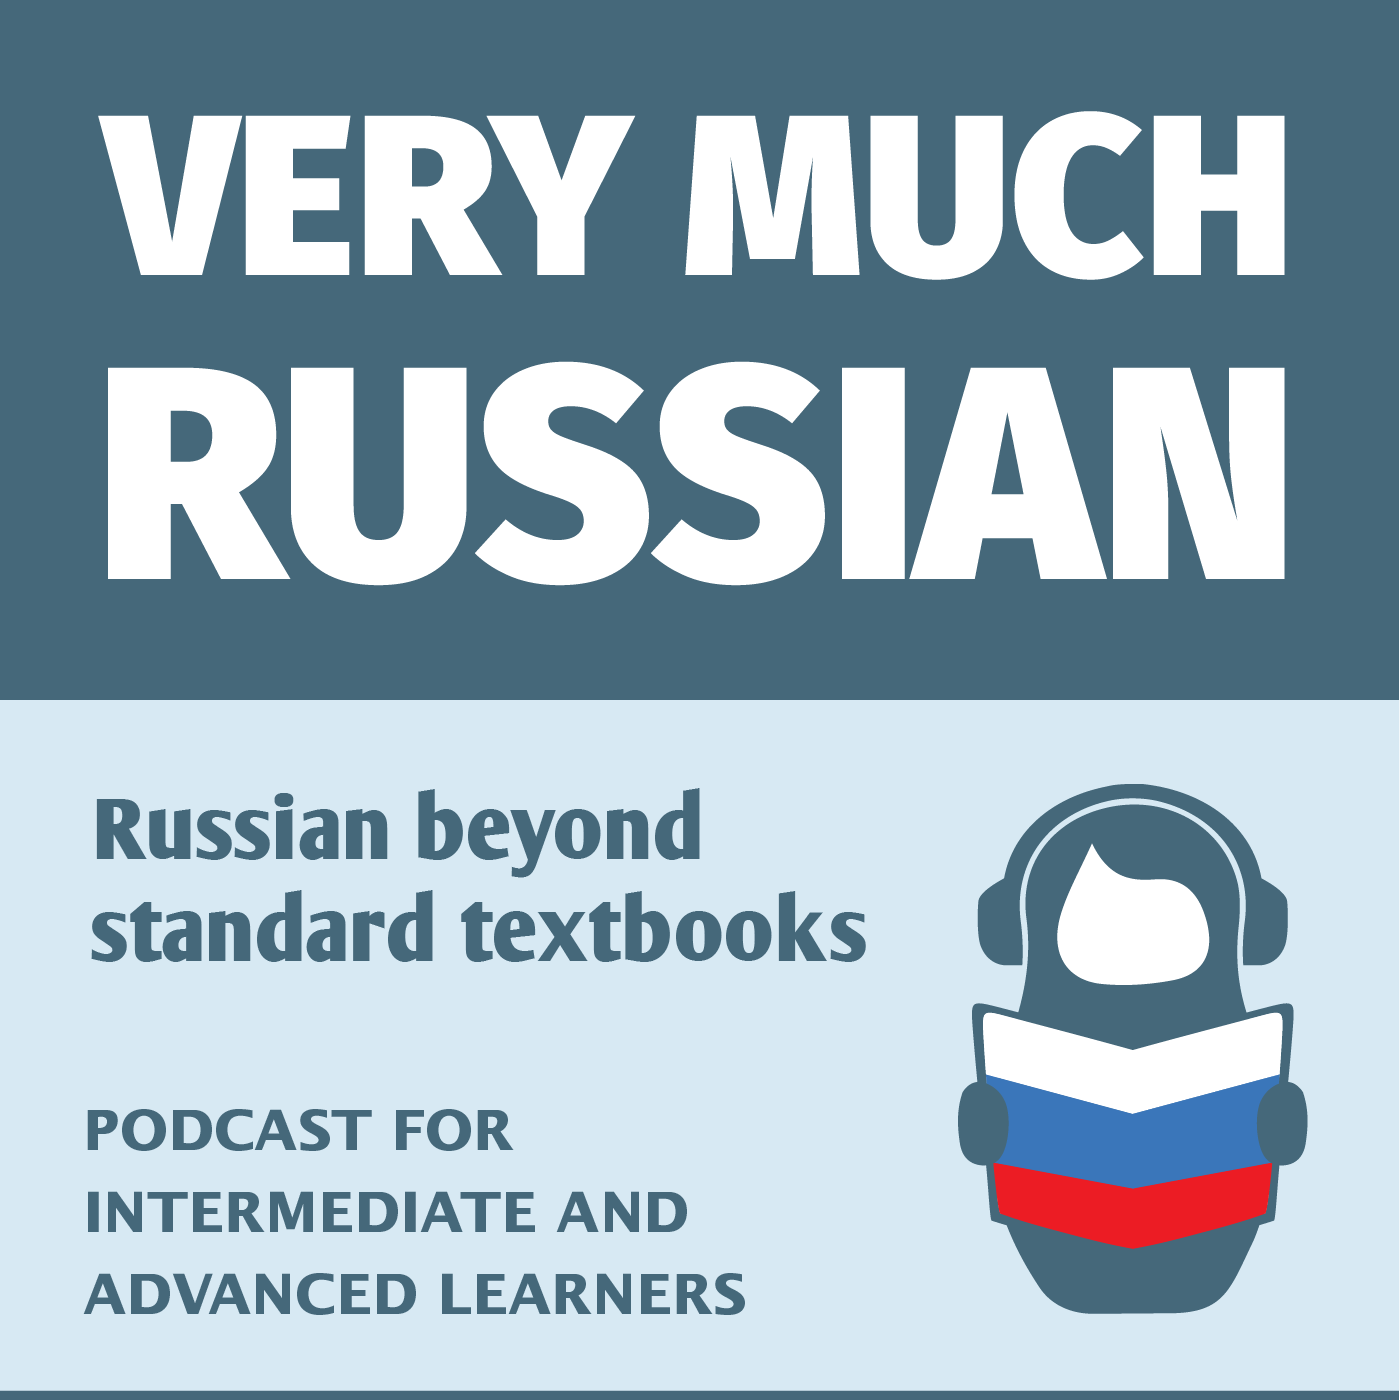 Very Much Russian - Learn Russian as Russians speak it!